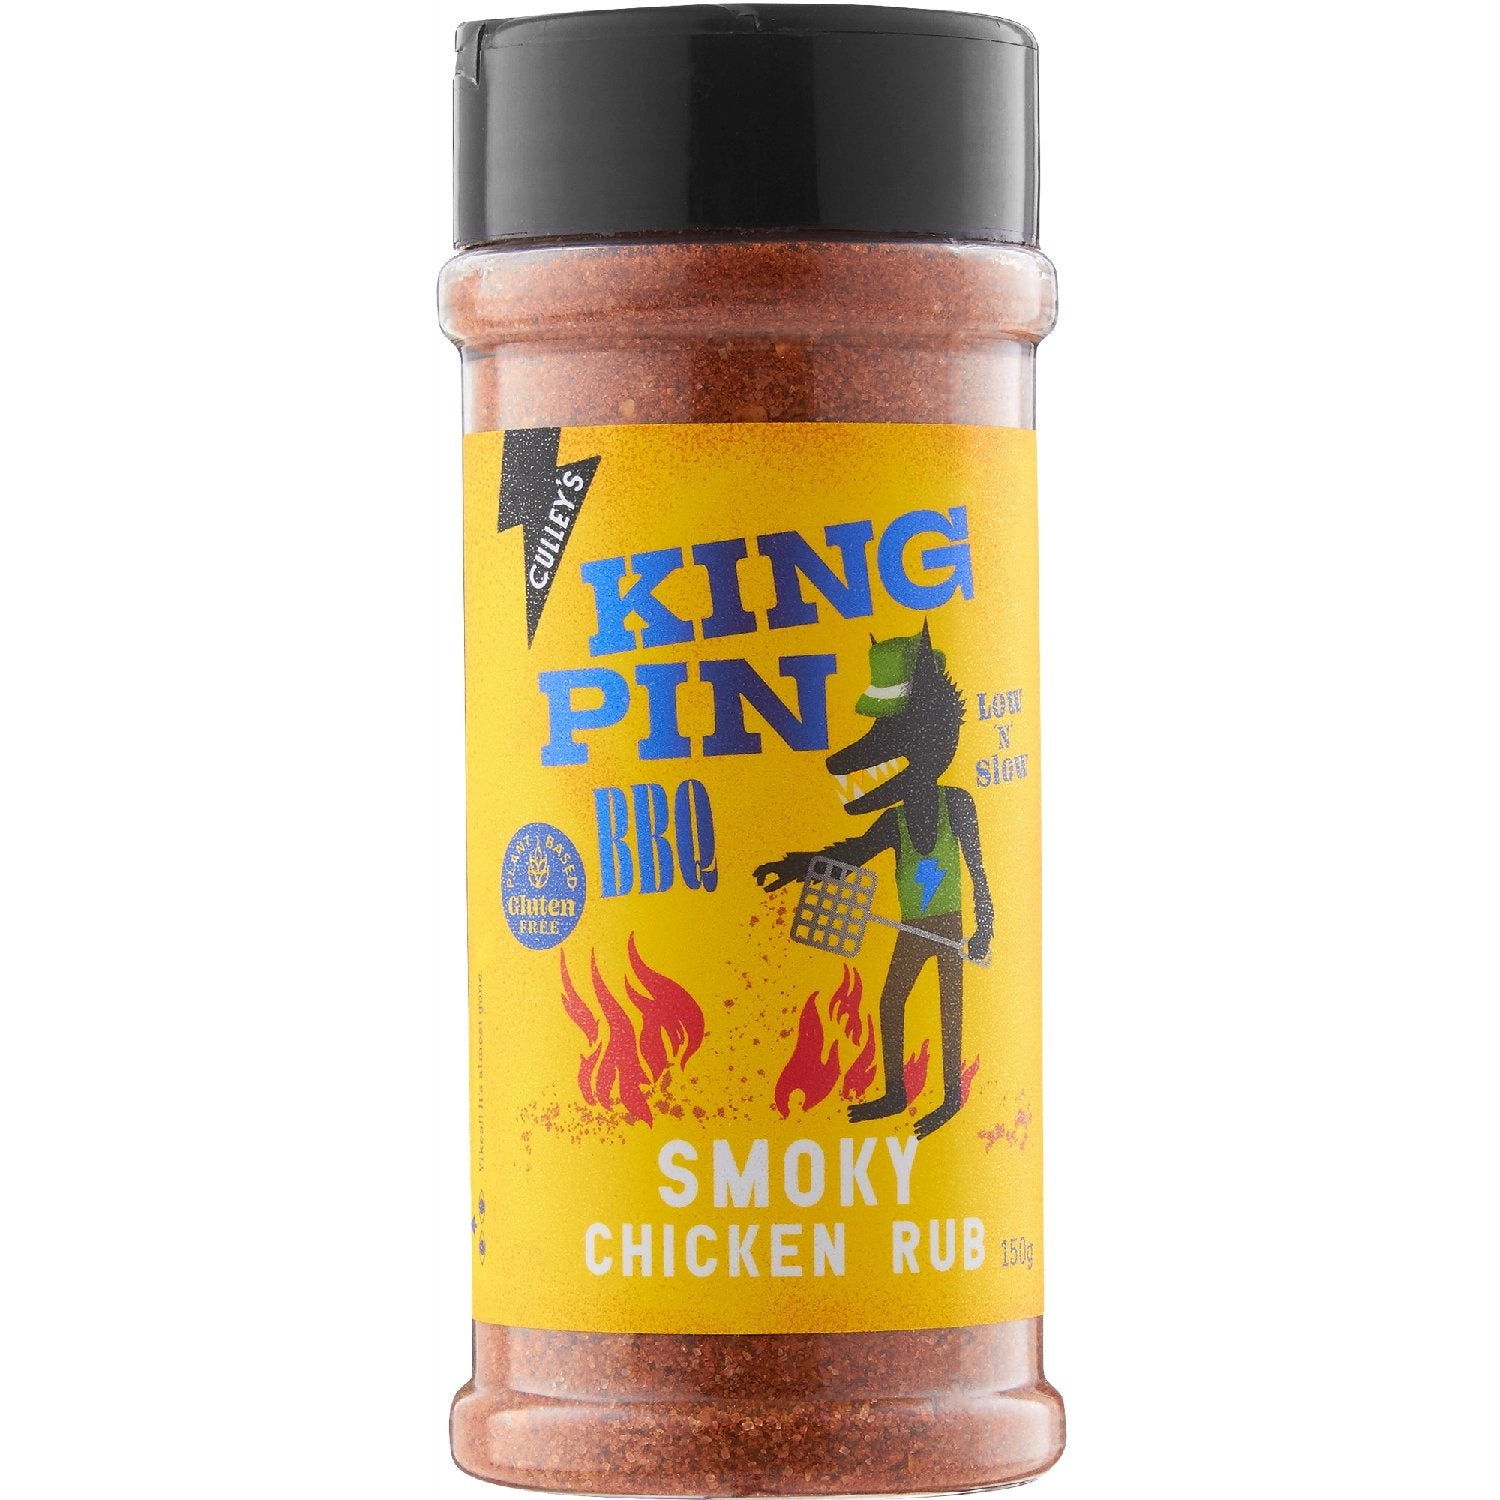 Culley's King Pin BBQ Smoky Chicken Rub 150g